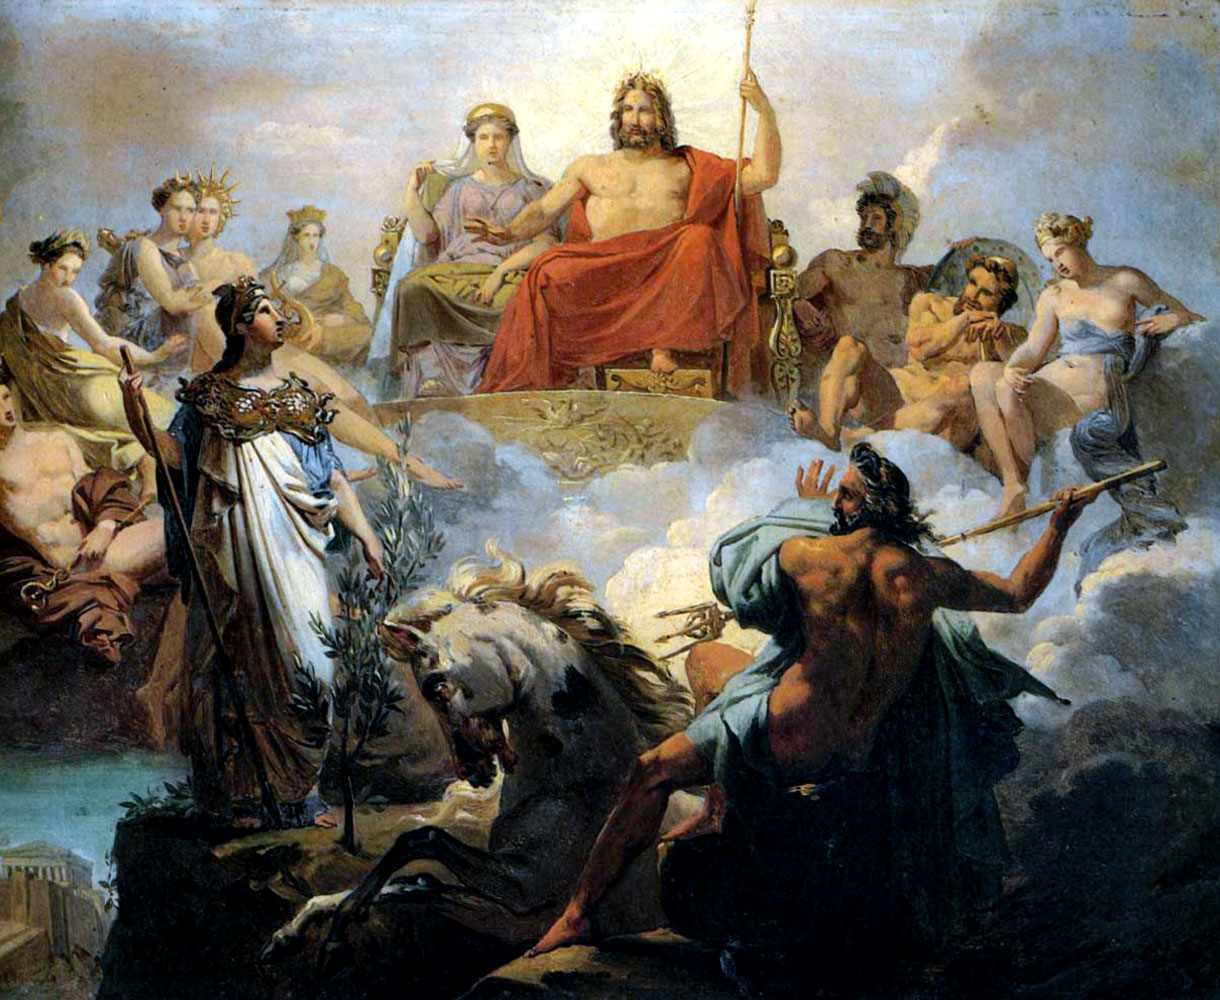 Grandes Heroes Y Leyendas De La Biblia: Joseph Y Su Abrigo De Muchos Colores